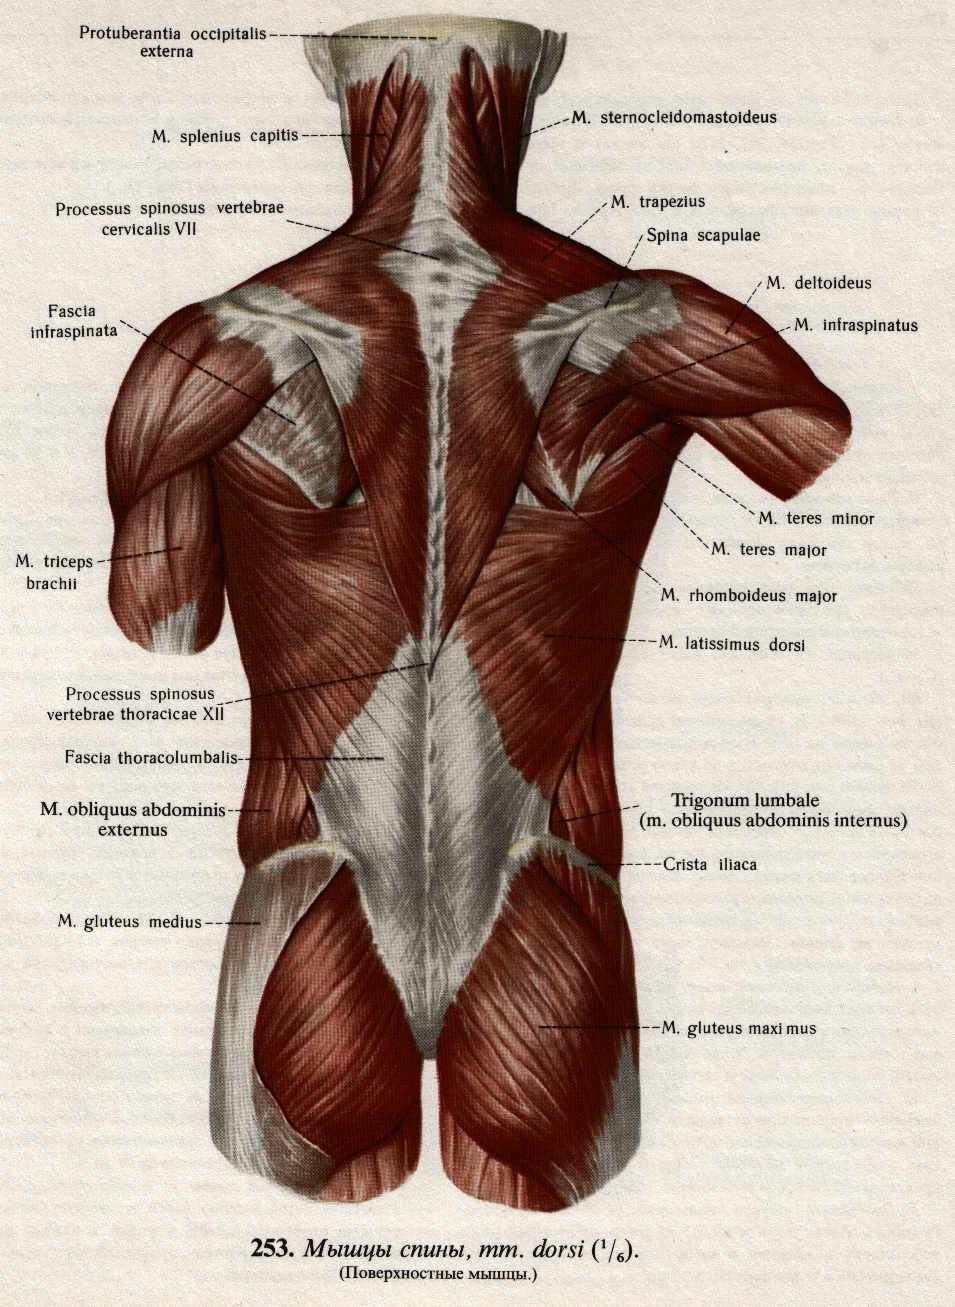 Поясница какие мышцы. Атлас Синельников мышцы спины. Анатомия спины человека мышцы и связки.